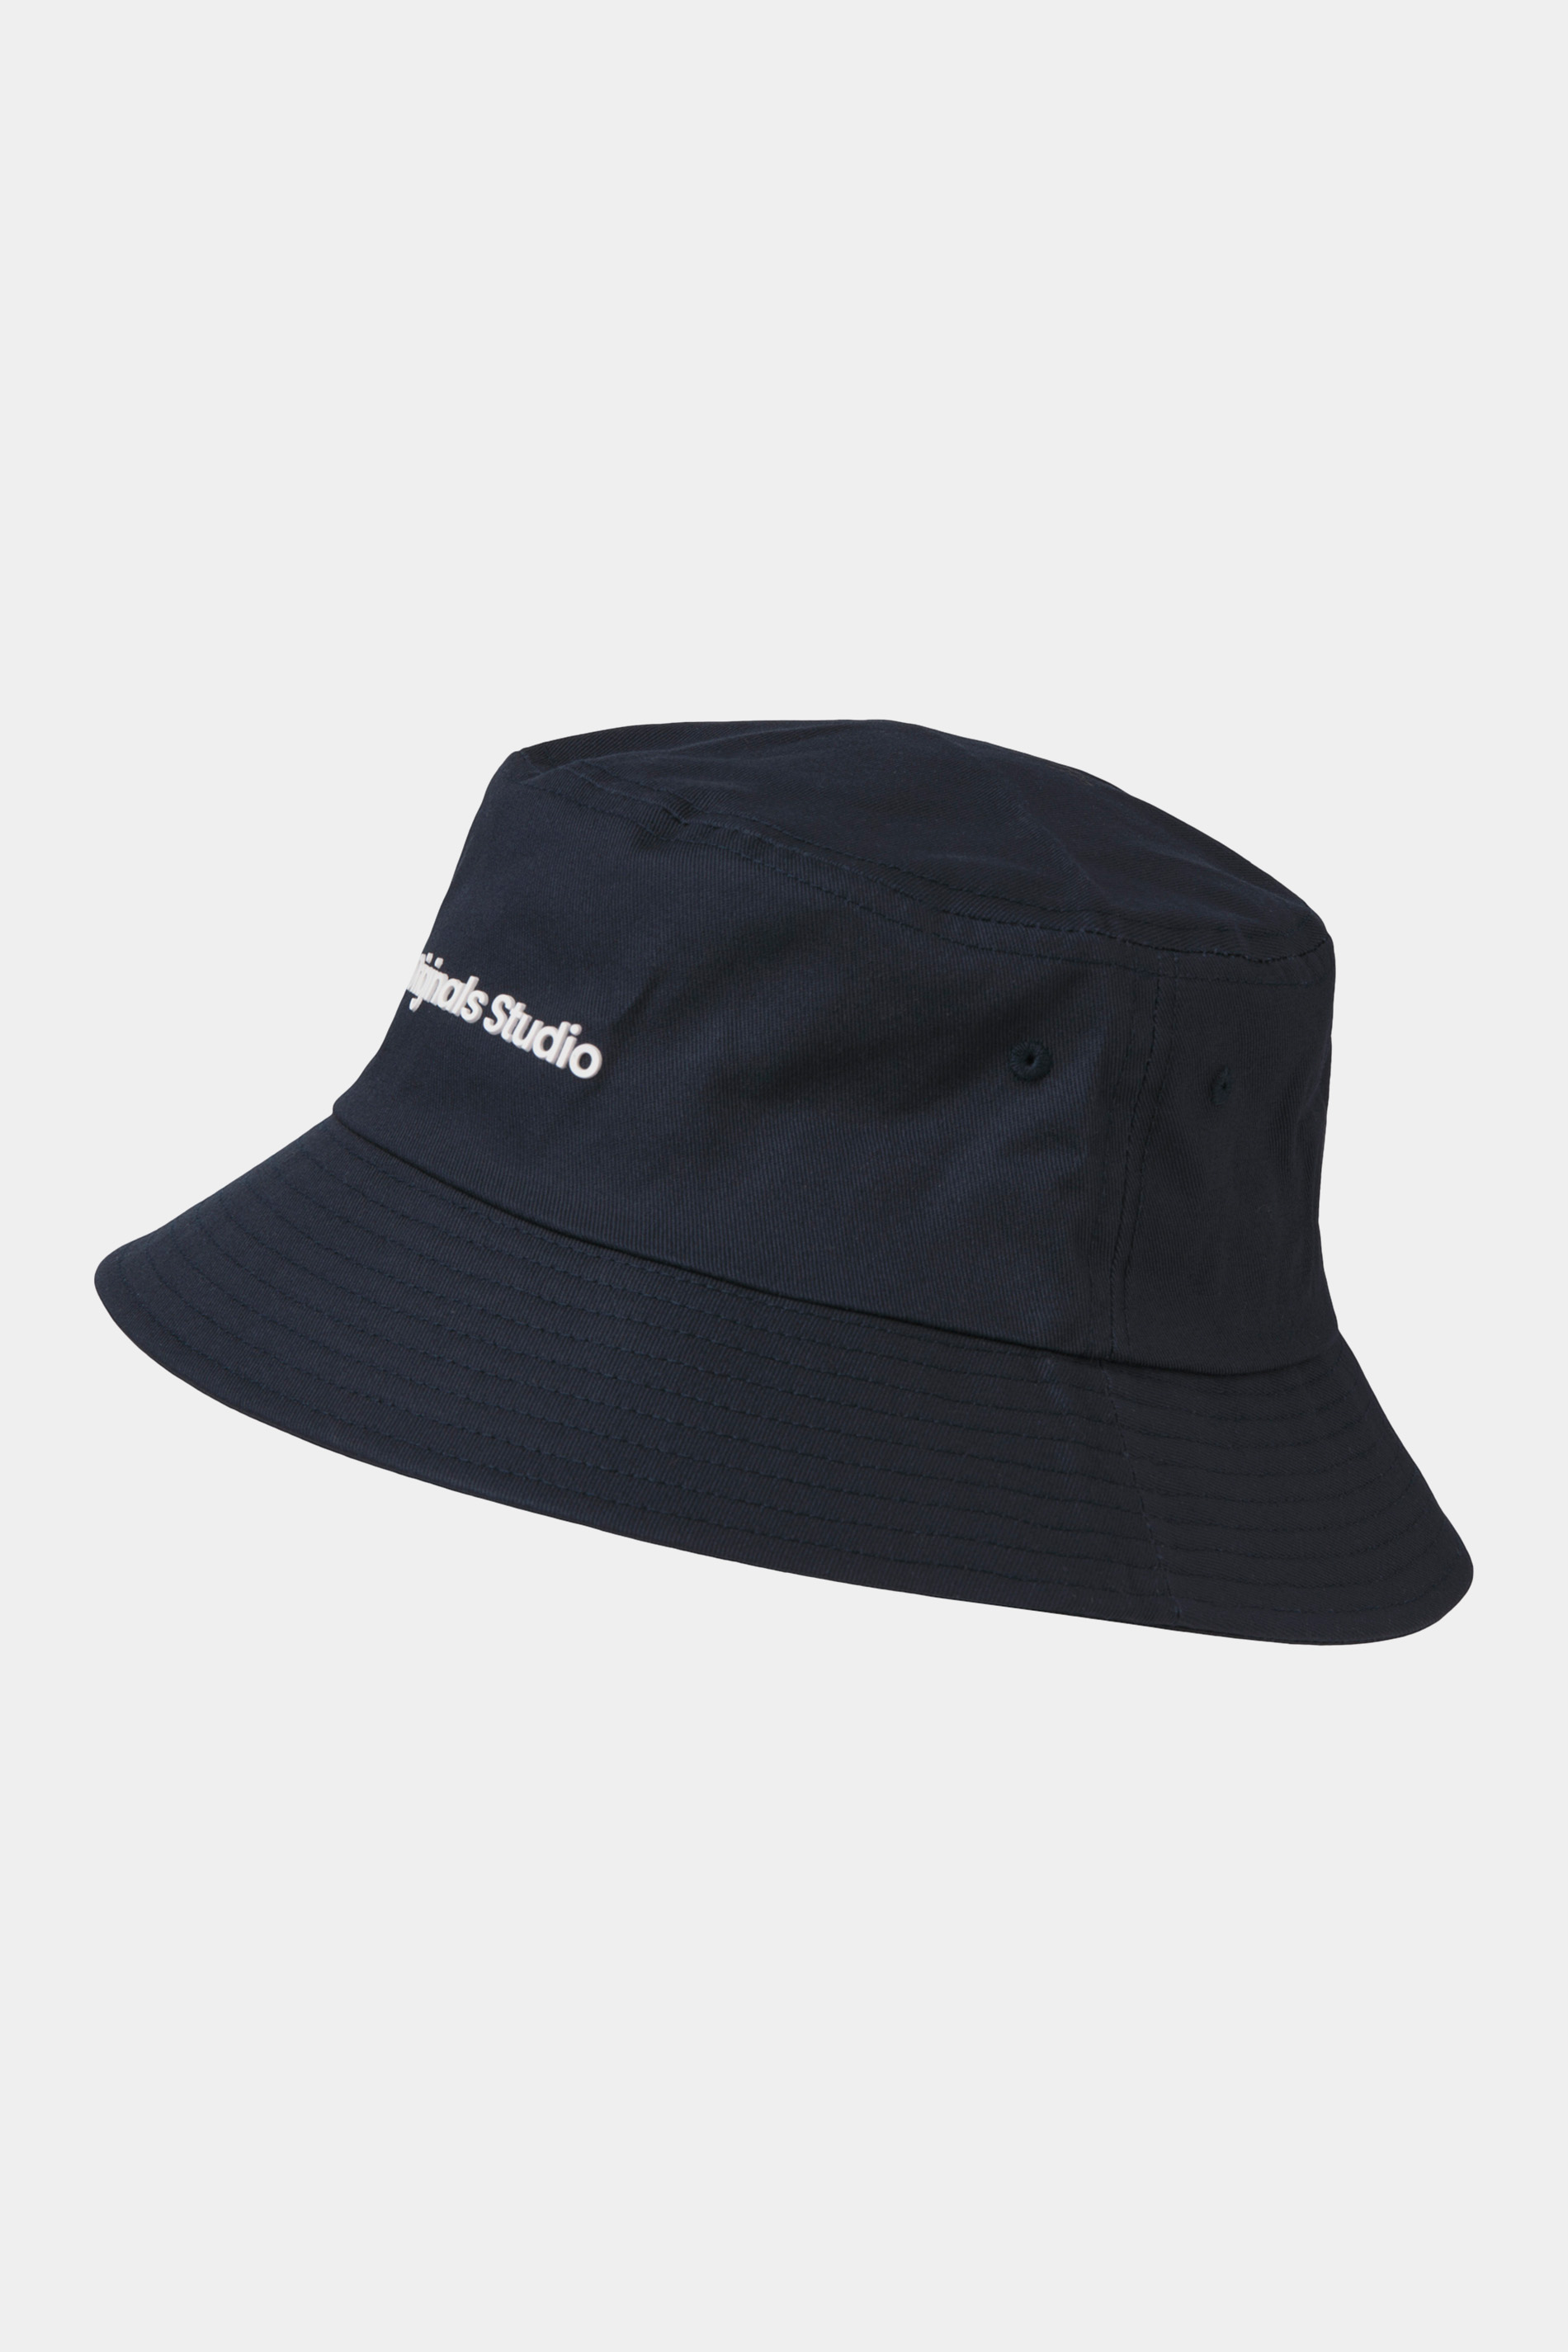 JACK & JONES Navy Blue Bucket Hat | BadRhino 3